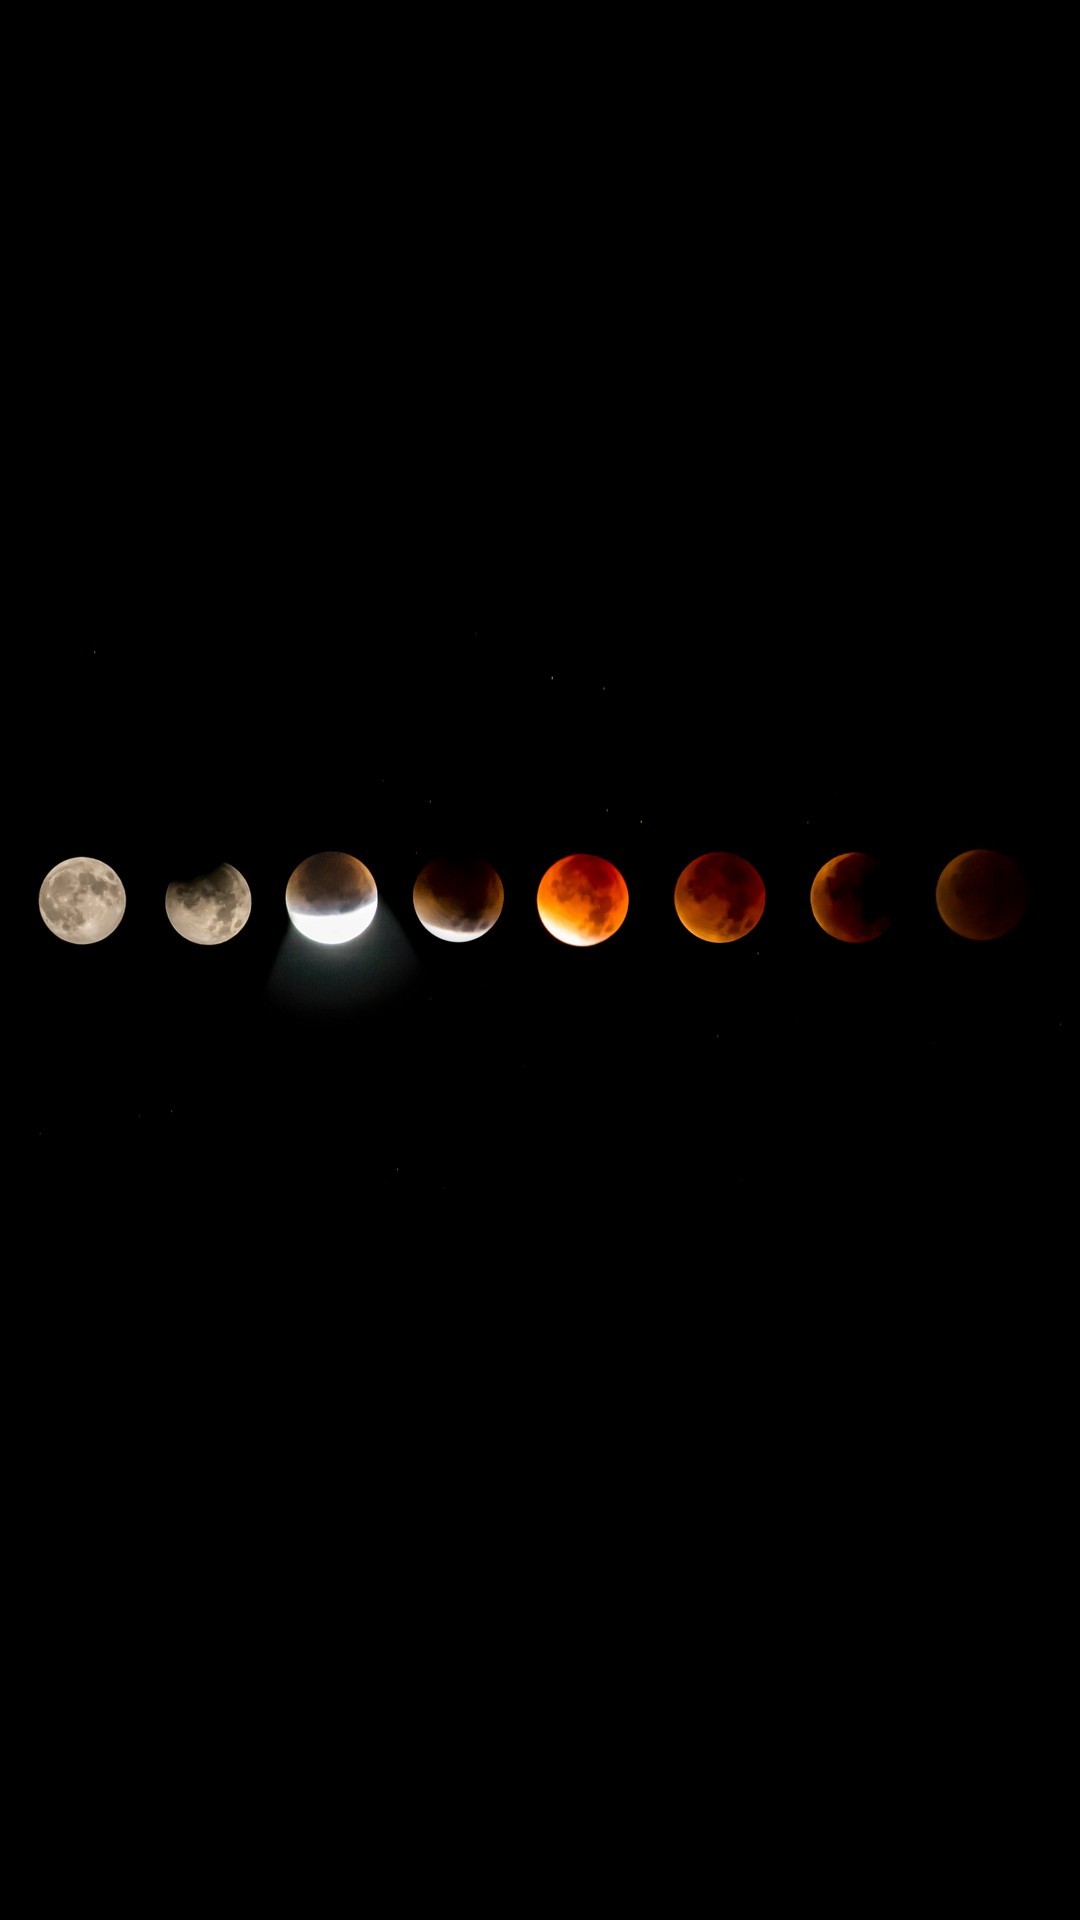 1080x1920 Blood Moon Lunar Eclipse iPhone Wallpaper resolution 